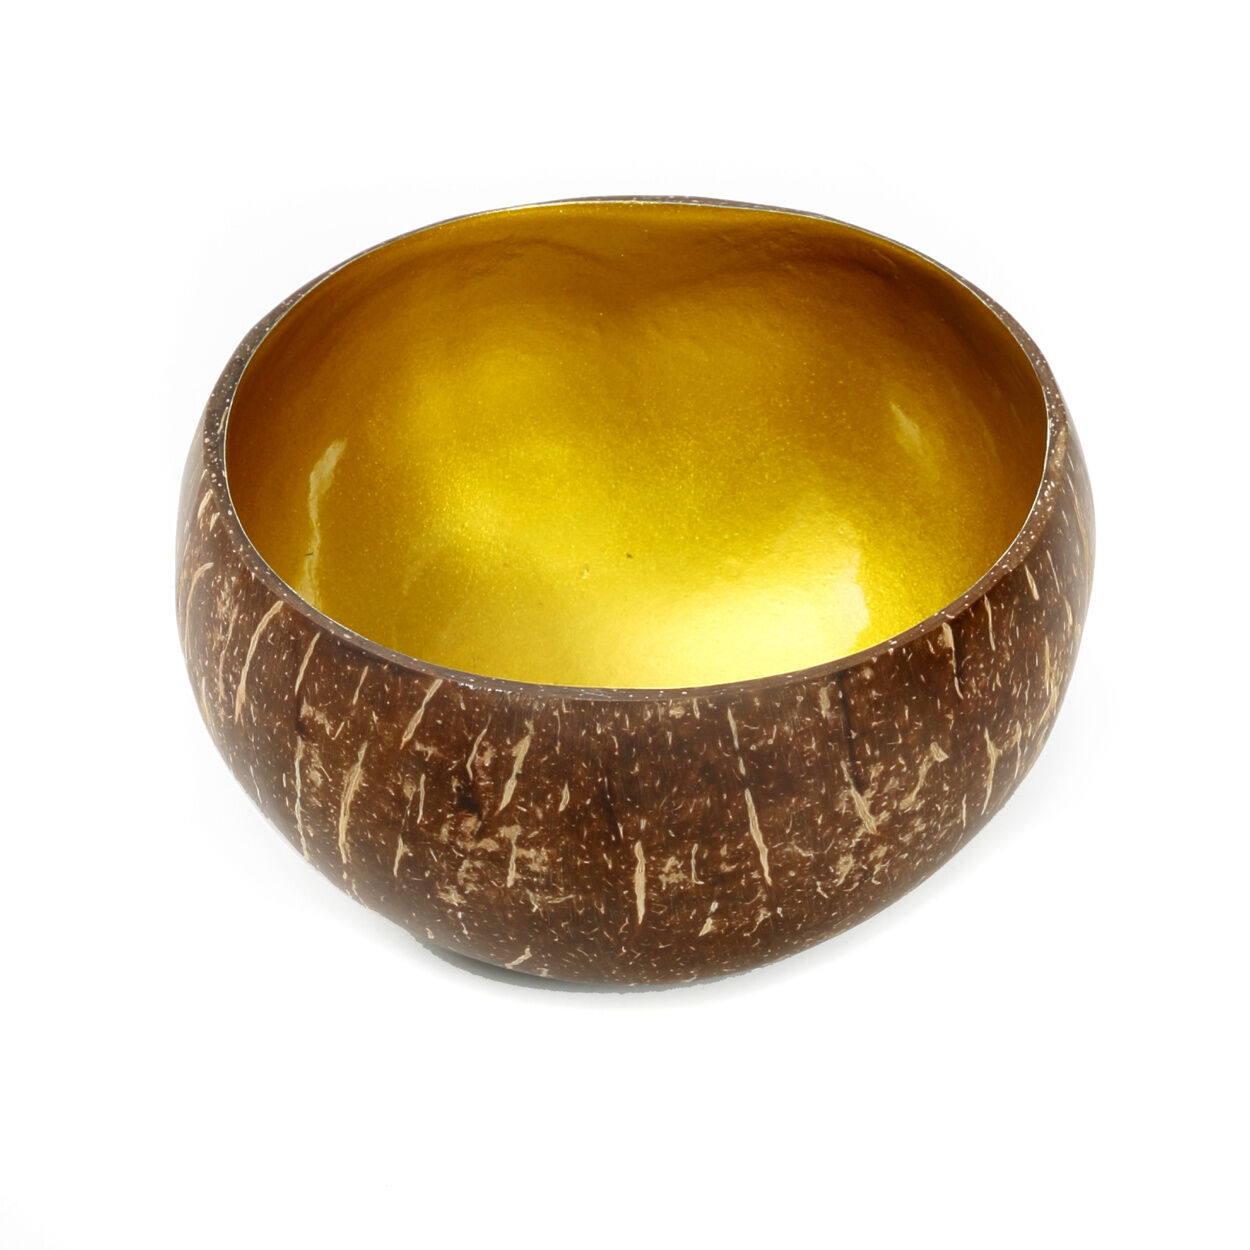 Kokosnuss Schale - Natur / Gold